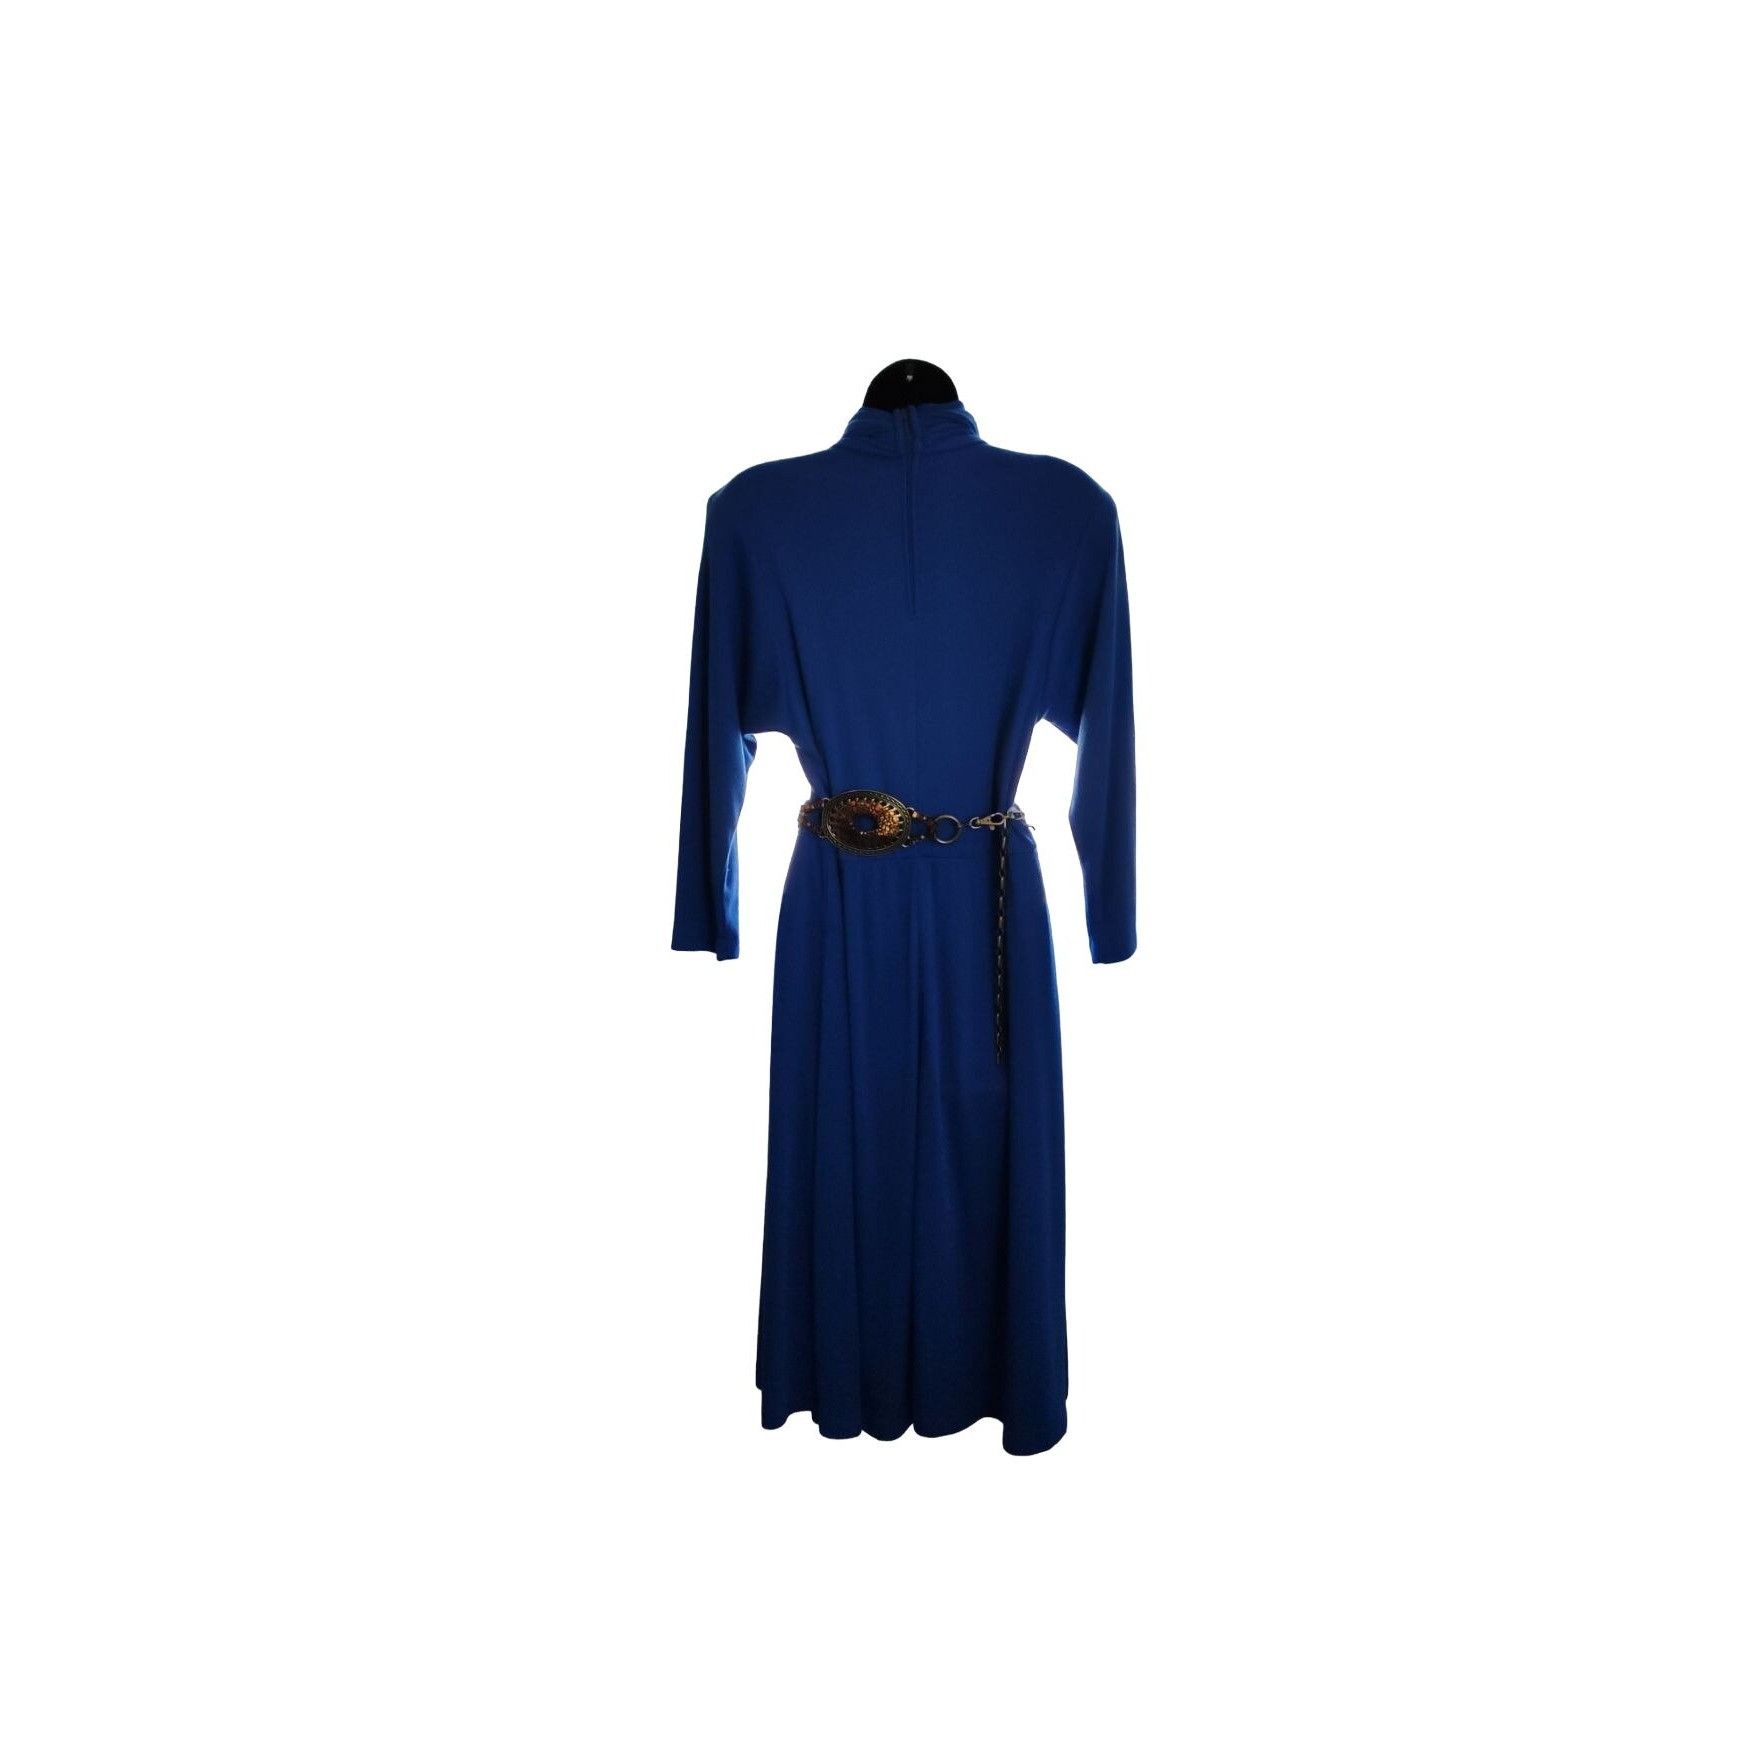 Vintage 1980's Joni Blair Blue Midi Dress Size M / US 6-8 / IT 42-44 - 3 Thumbnail